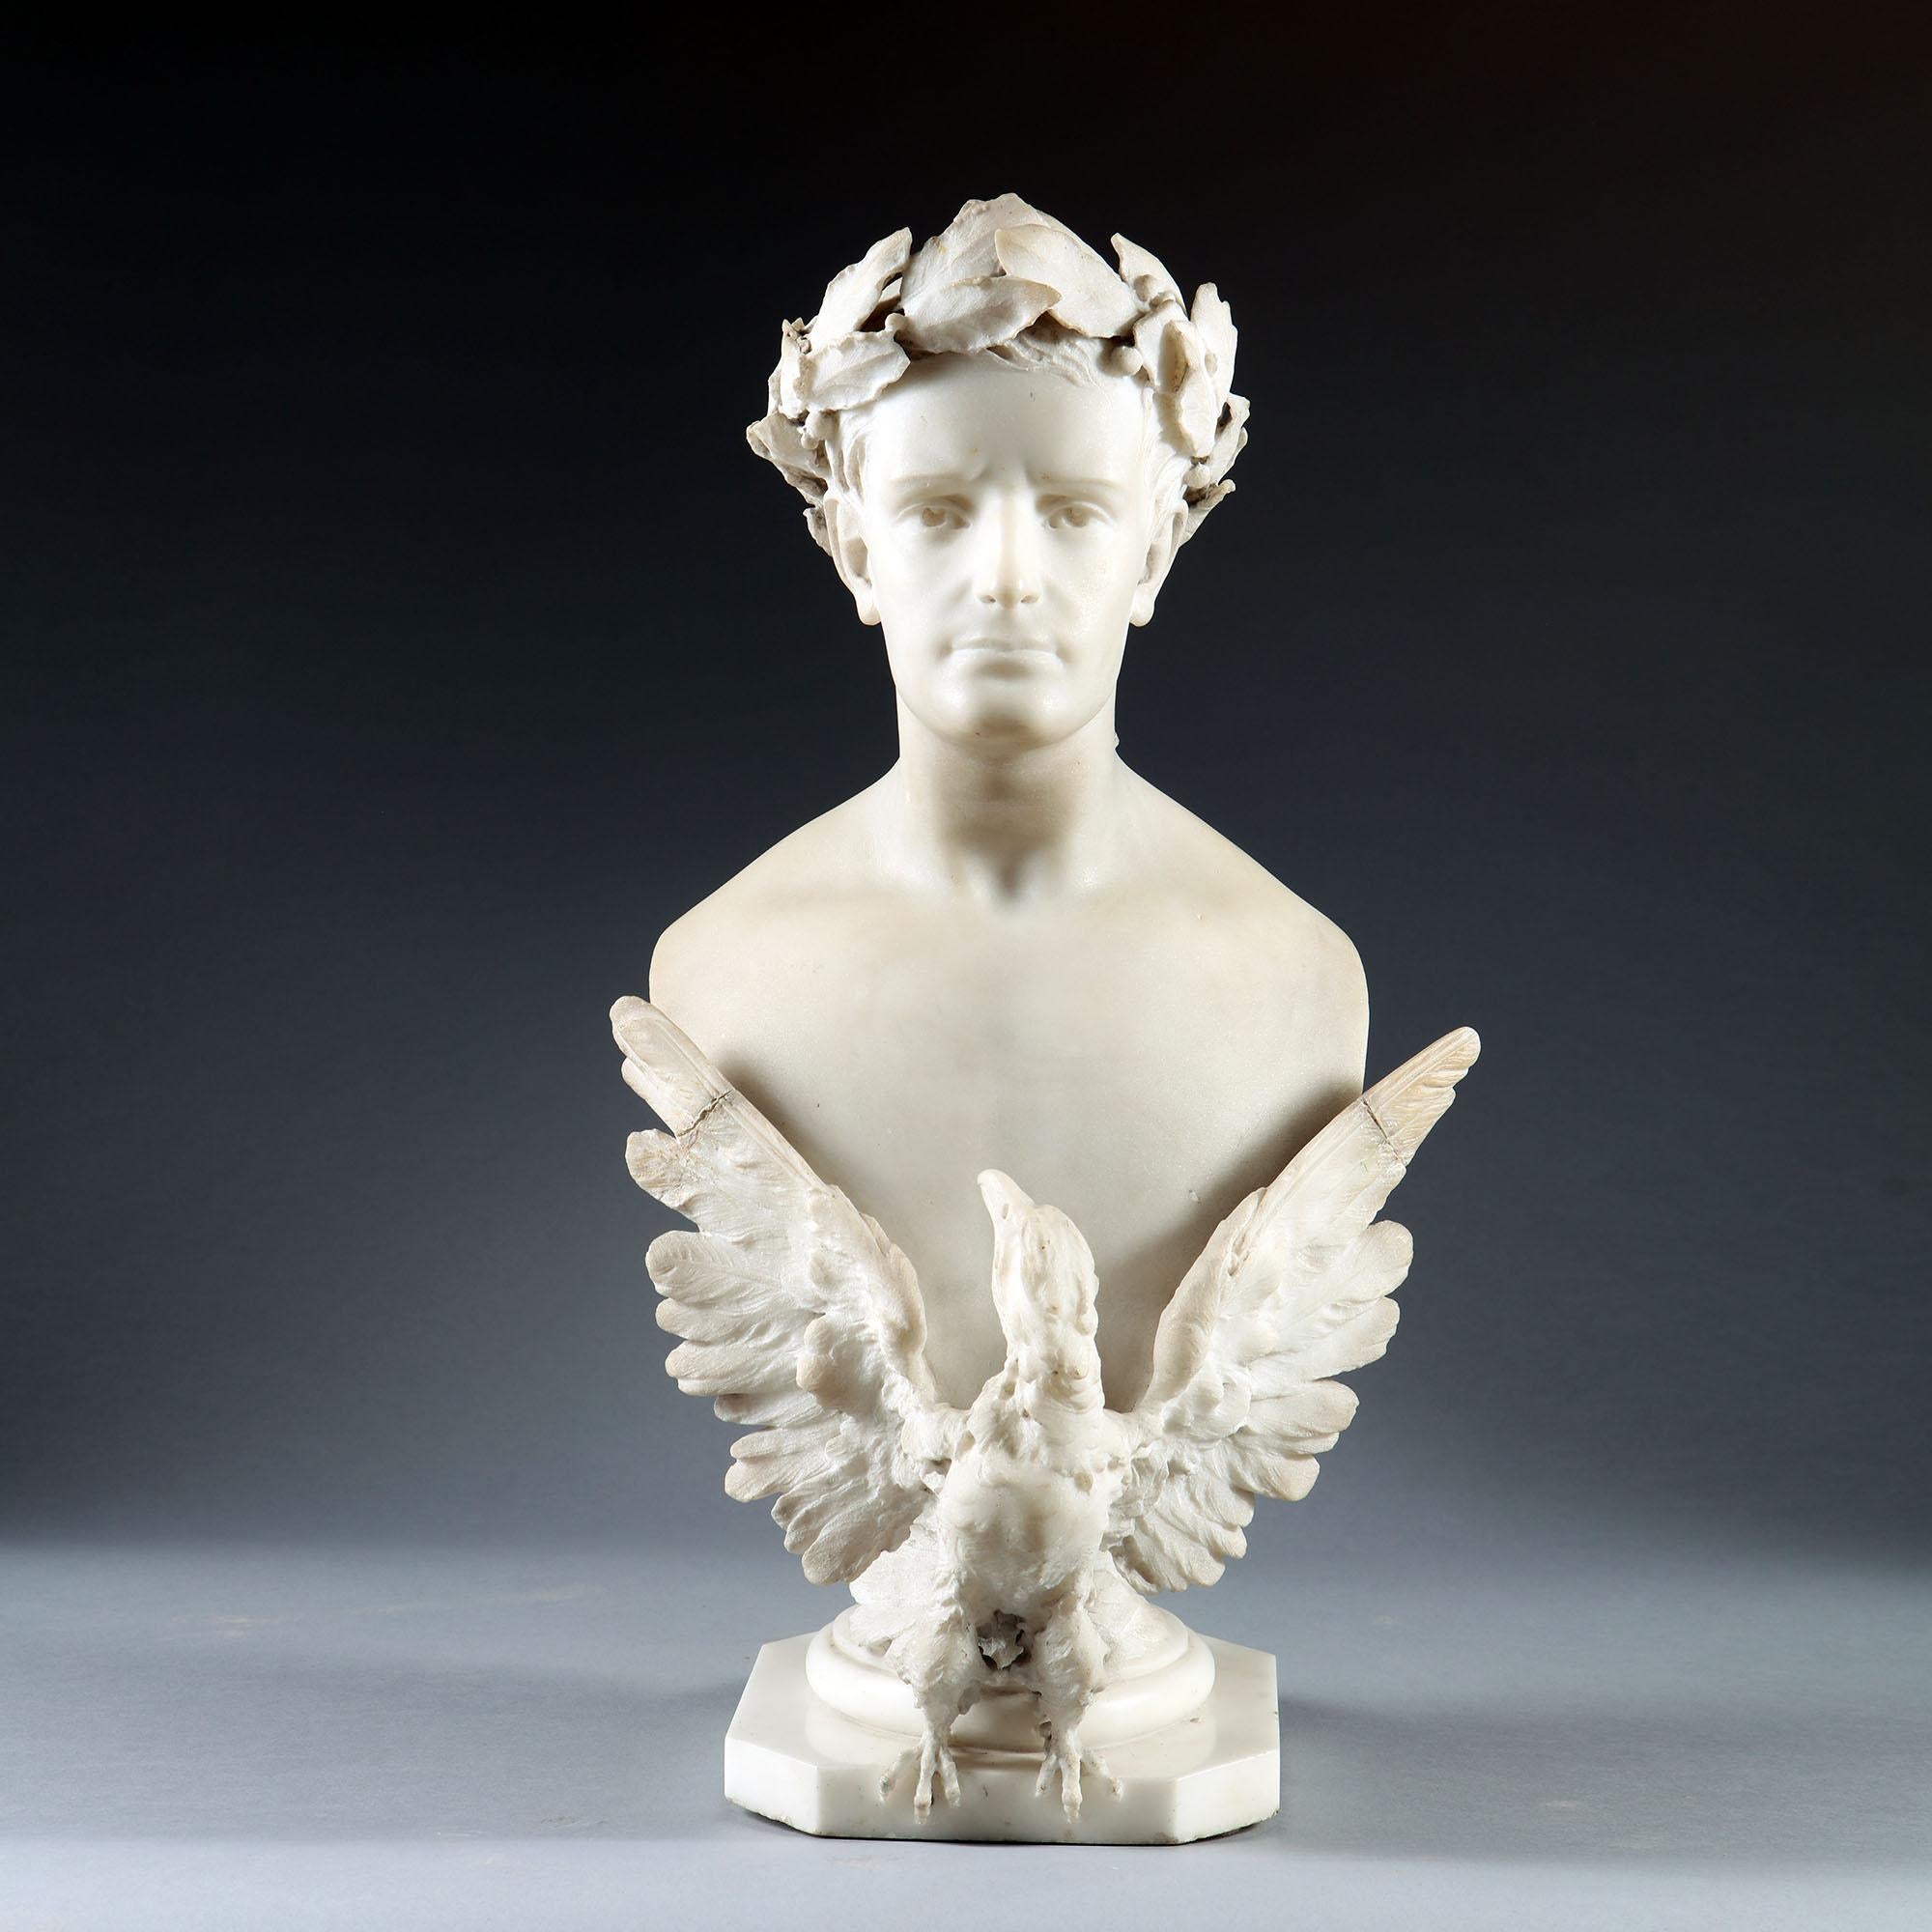 Buste de Napoléon en marbre sculpté, datant du début ou du milieu du XIXe siècle, représenté portant une couronne de laurier et un aigle impérial déployé sur la poitrine, sur un socle circulaire ou carré tourné.

